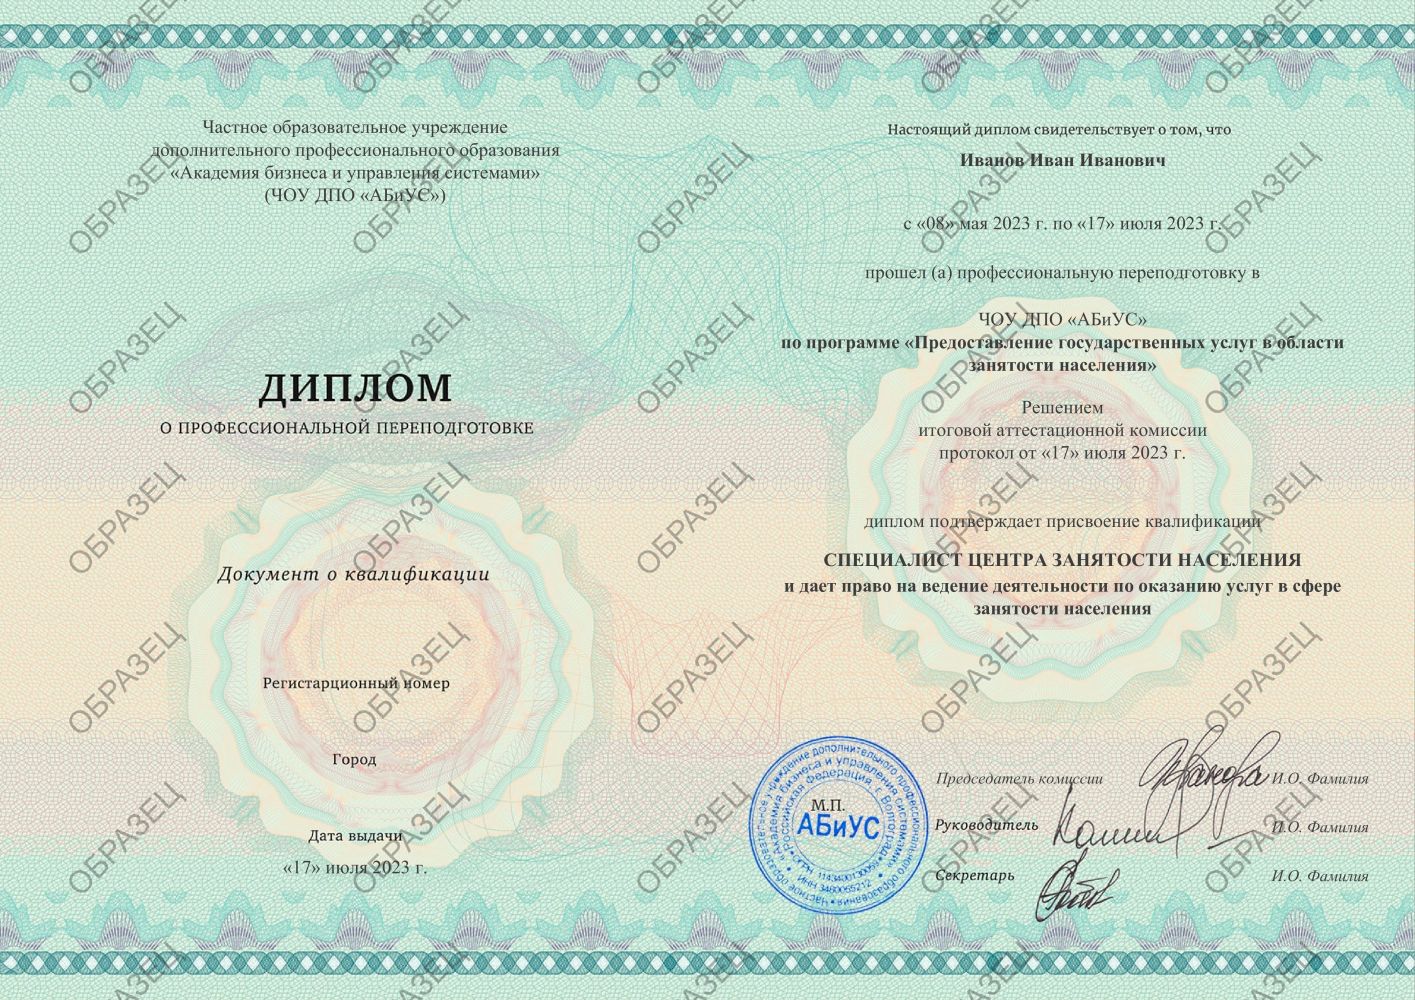 Диплом Предоставление государственных услуг в области занятости населения 260 часов 9500 руб.